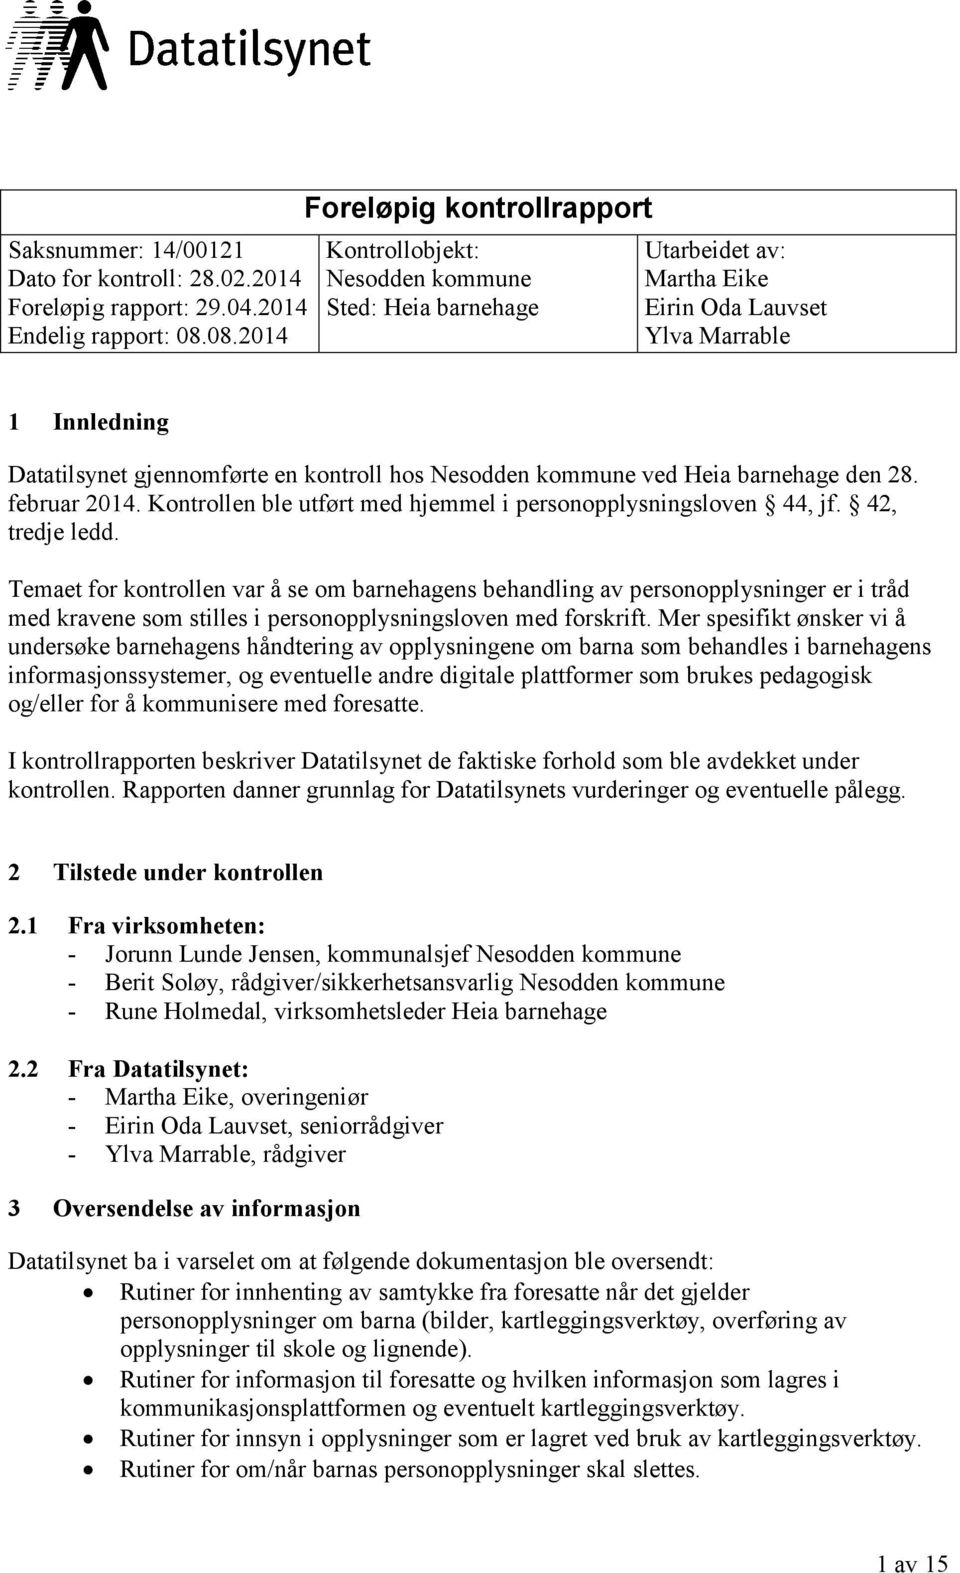 hos Nesodden kommune ved Heia barnehage den 28. februar 2014. Kontrollen ble utført med hjemmel i personopplysningsloven 44, jf. 42, tredje ledd.